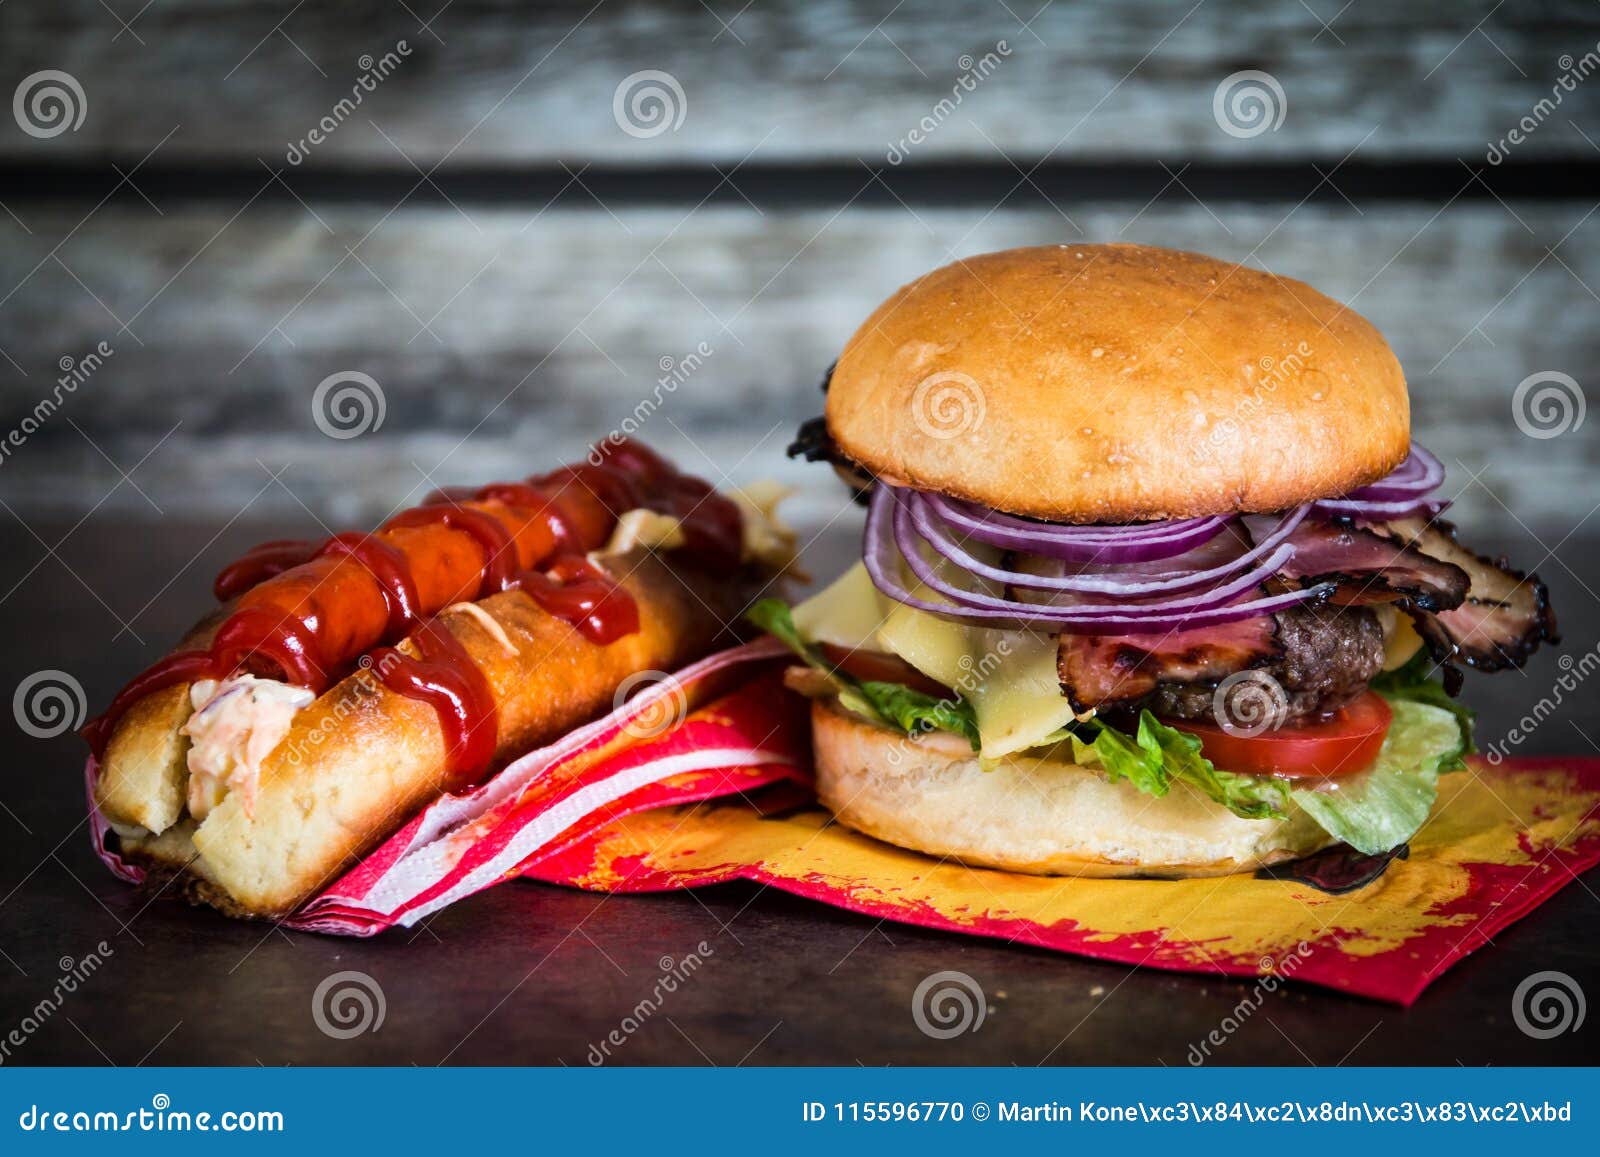 burger and hotdog